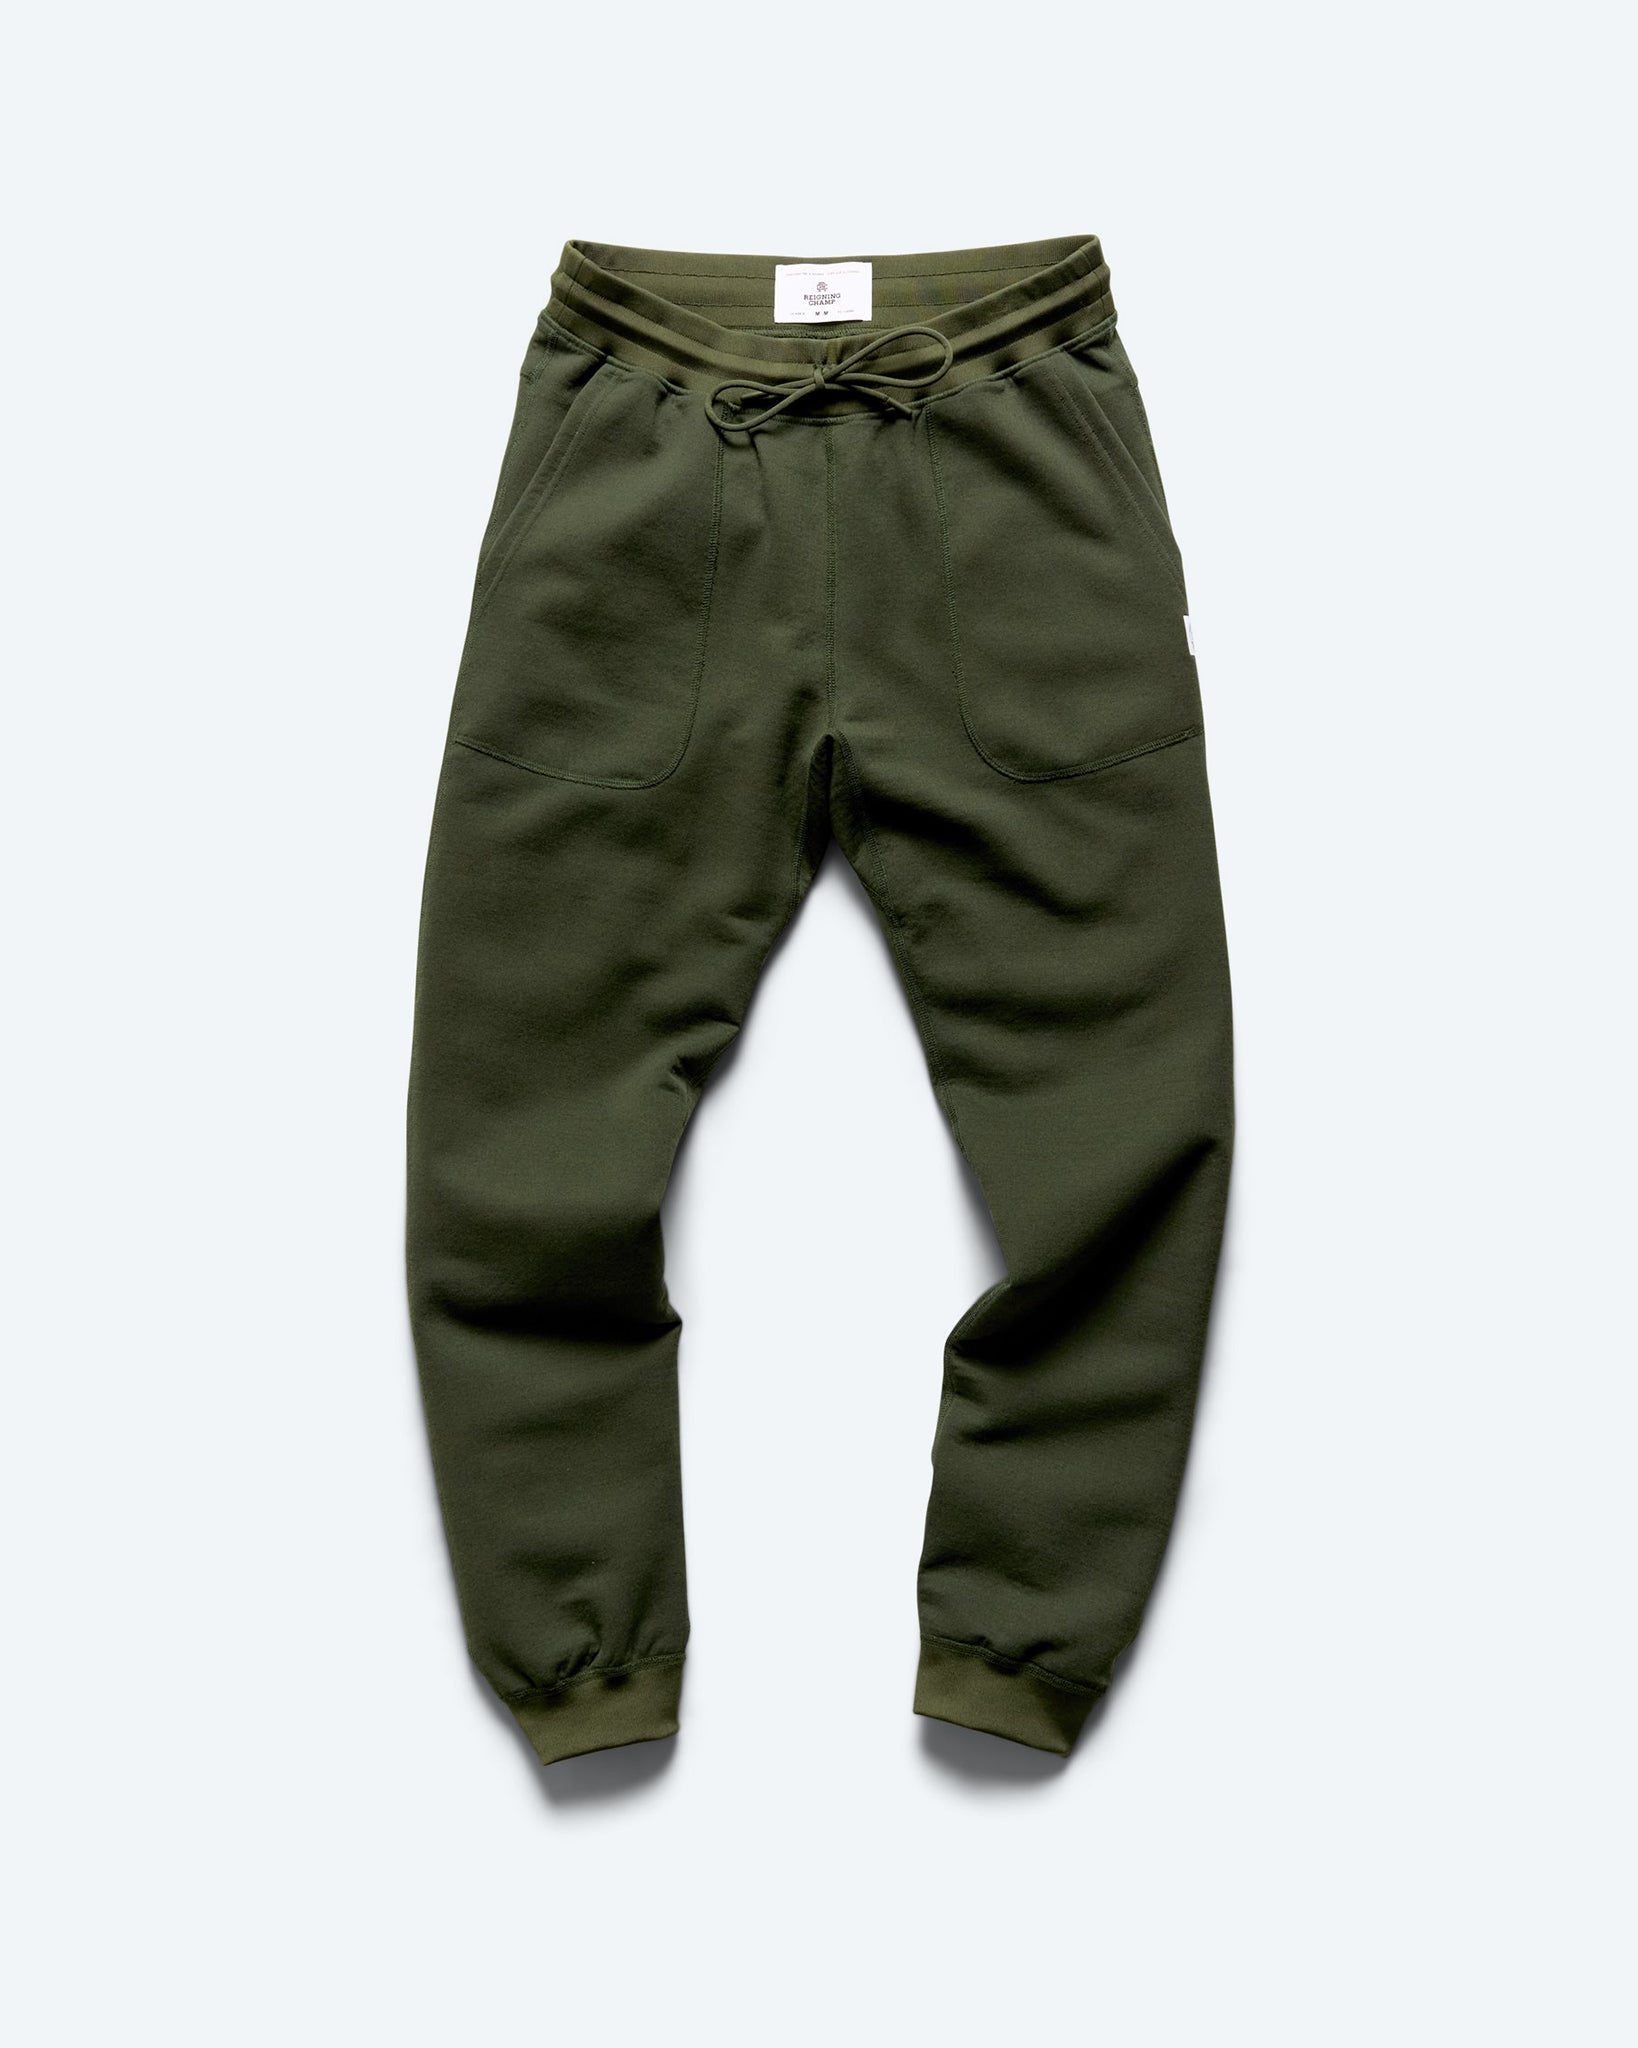 3 Pack Men's Fleece Jogger Pants with Zipper Pockets (M-2XL)